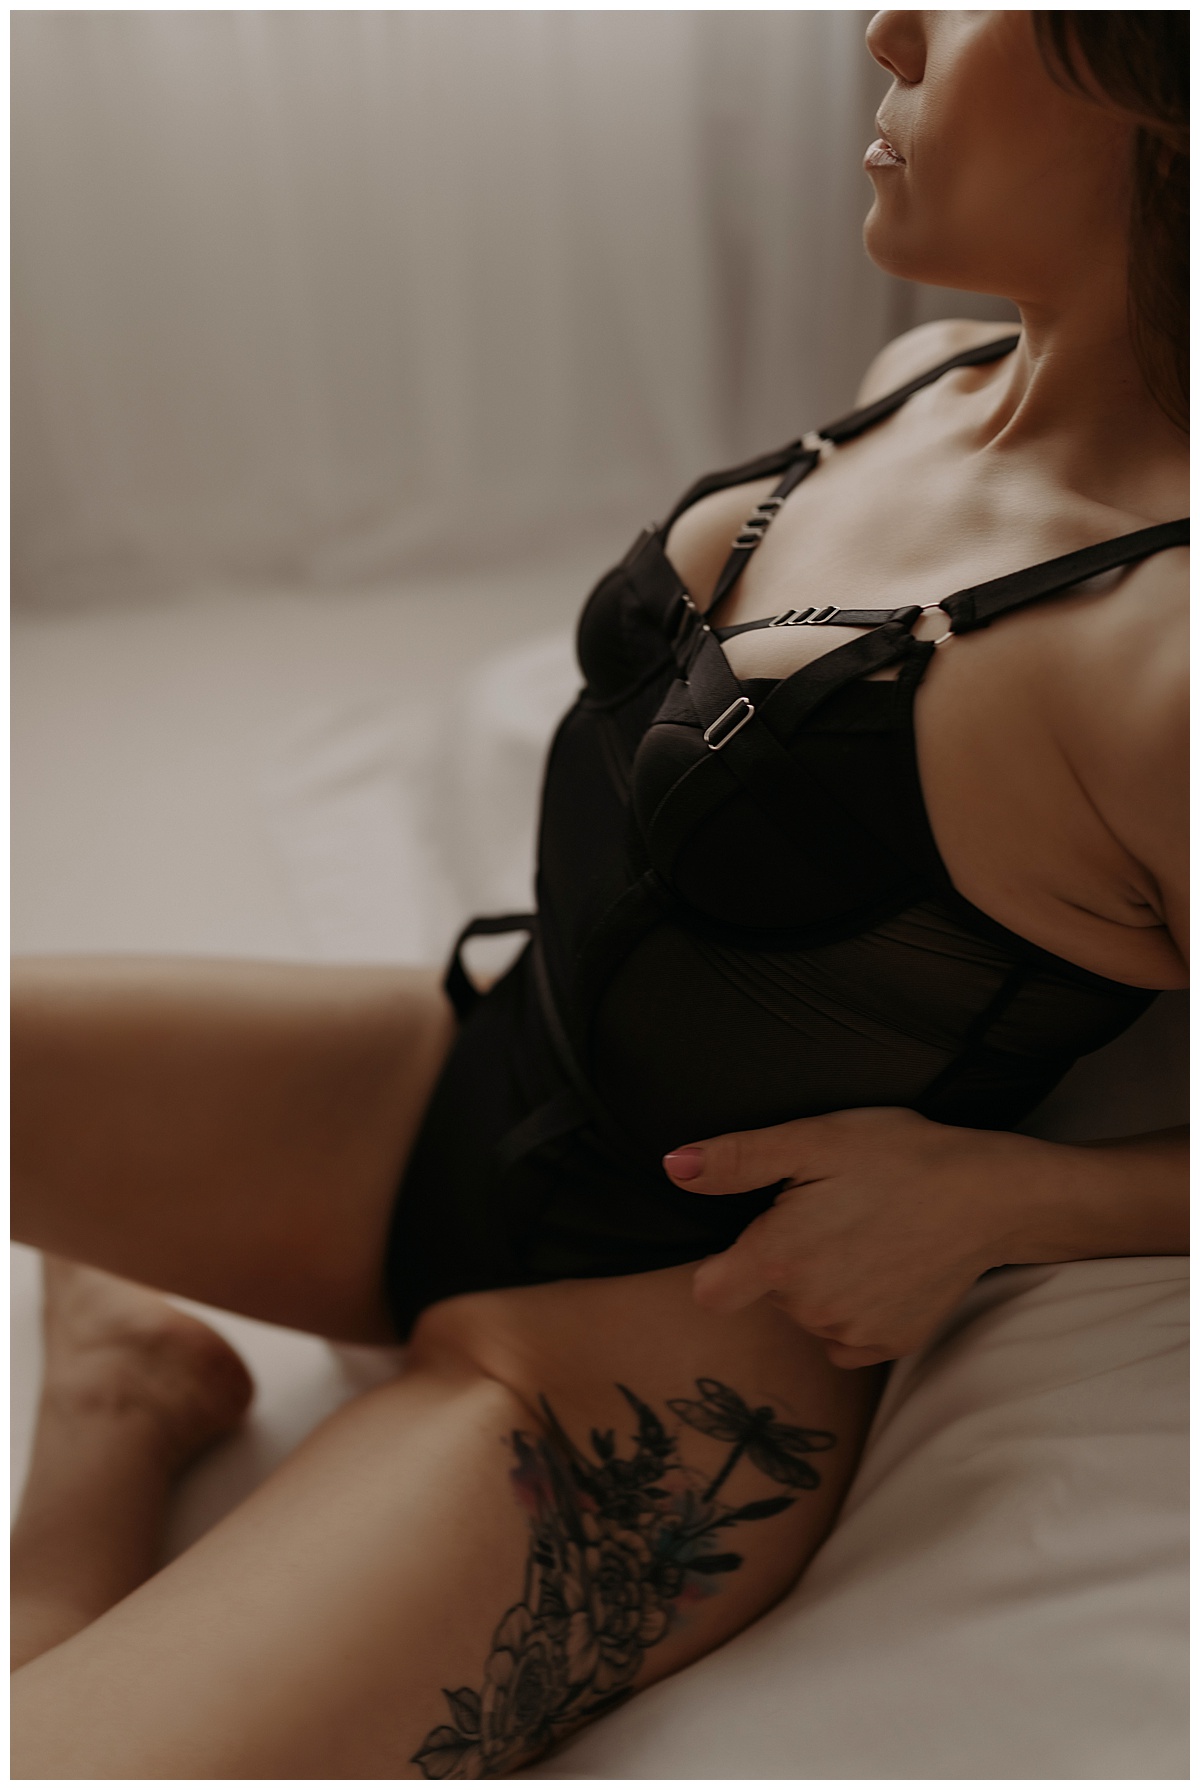 Stunning black lingerie details for Minneapolis Boudoir Photographer